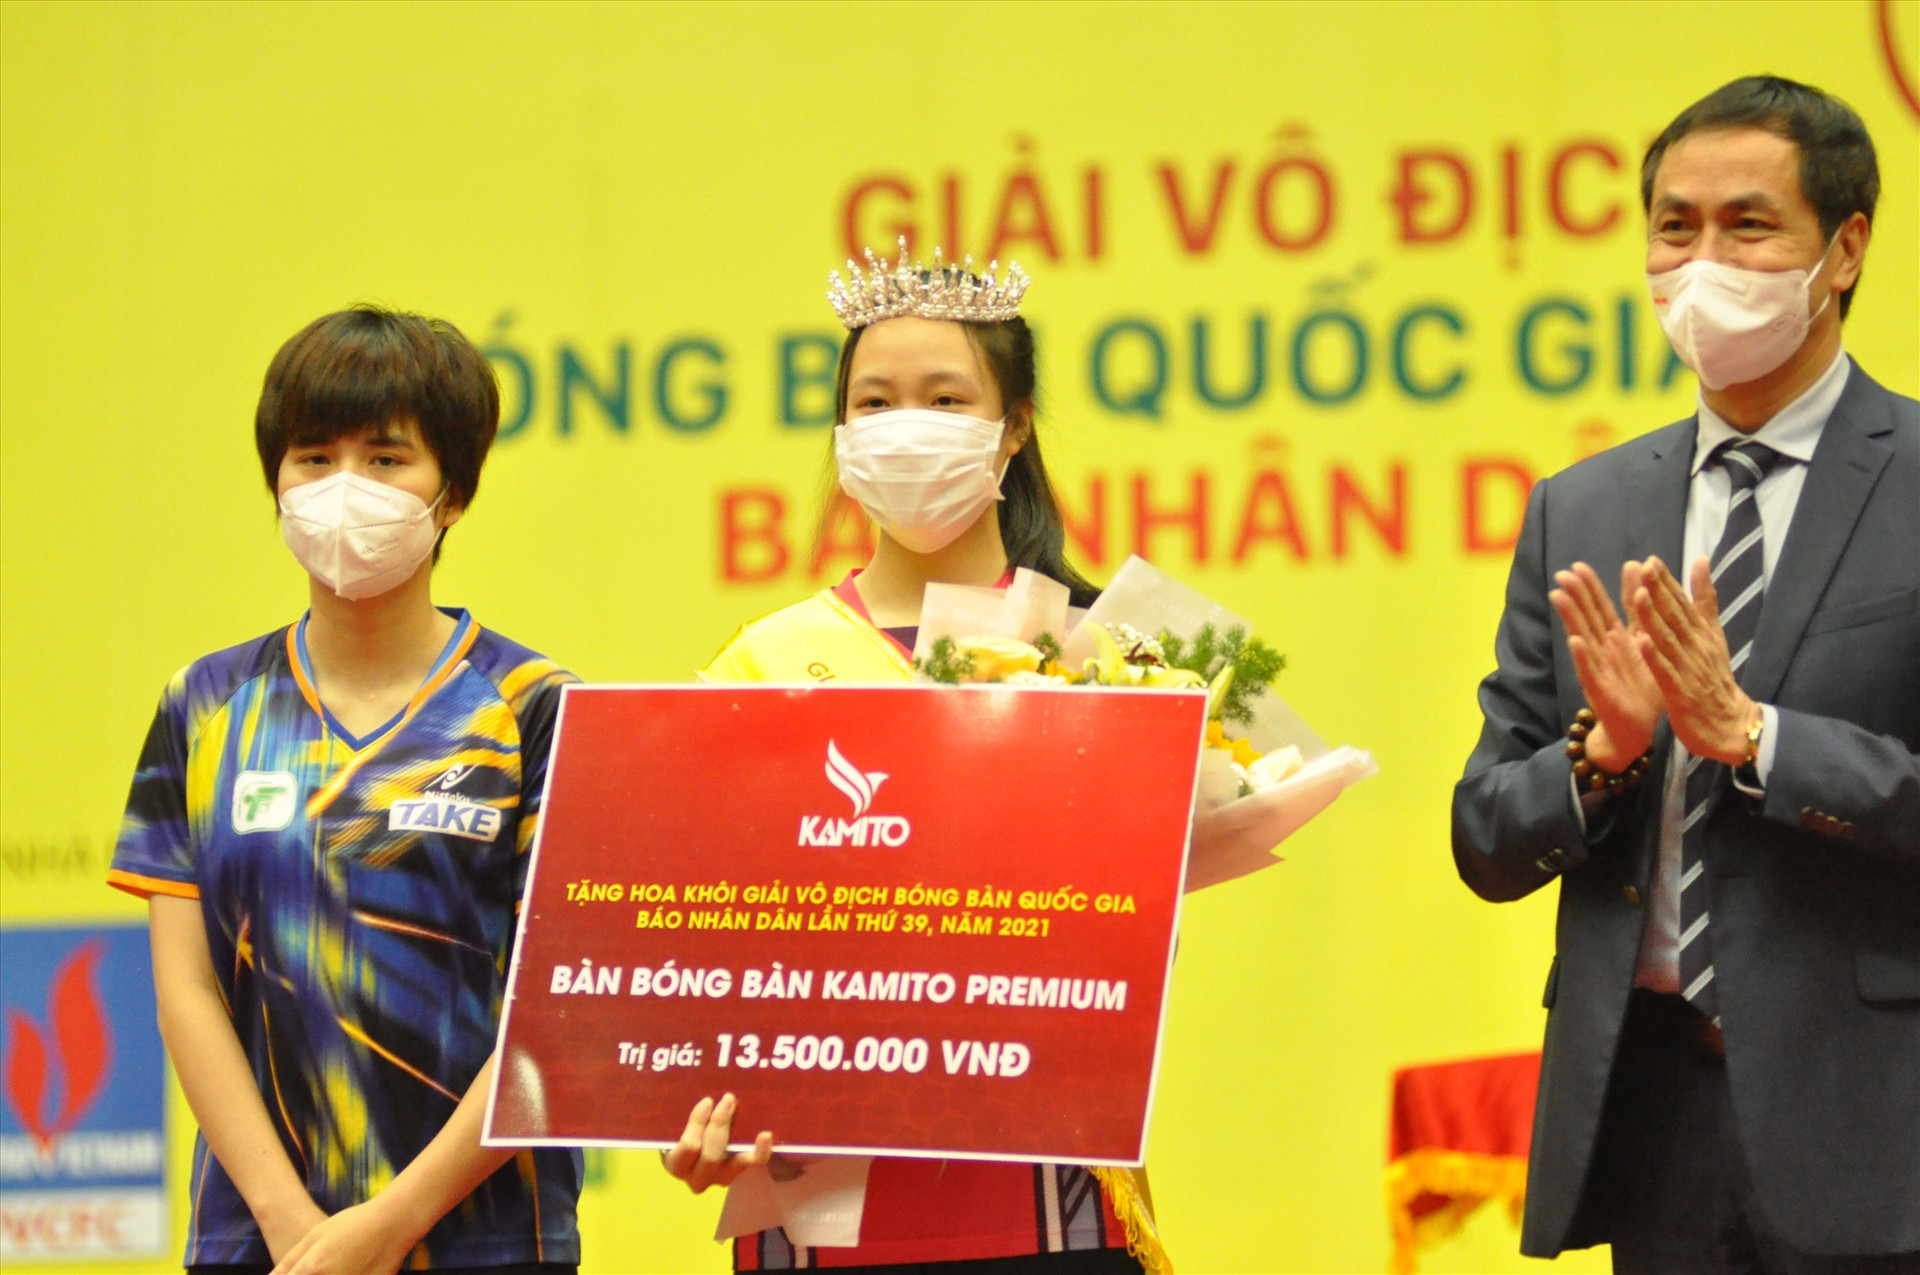 Danh hiệu Hoa khôi bóng bàn Việt Nam được trao cho tay vợt 17 tuổi Nguyễn Thị Mai Phương (Long Hải Hải Dương). Ảnh: T.V